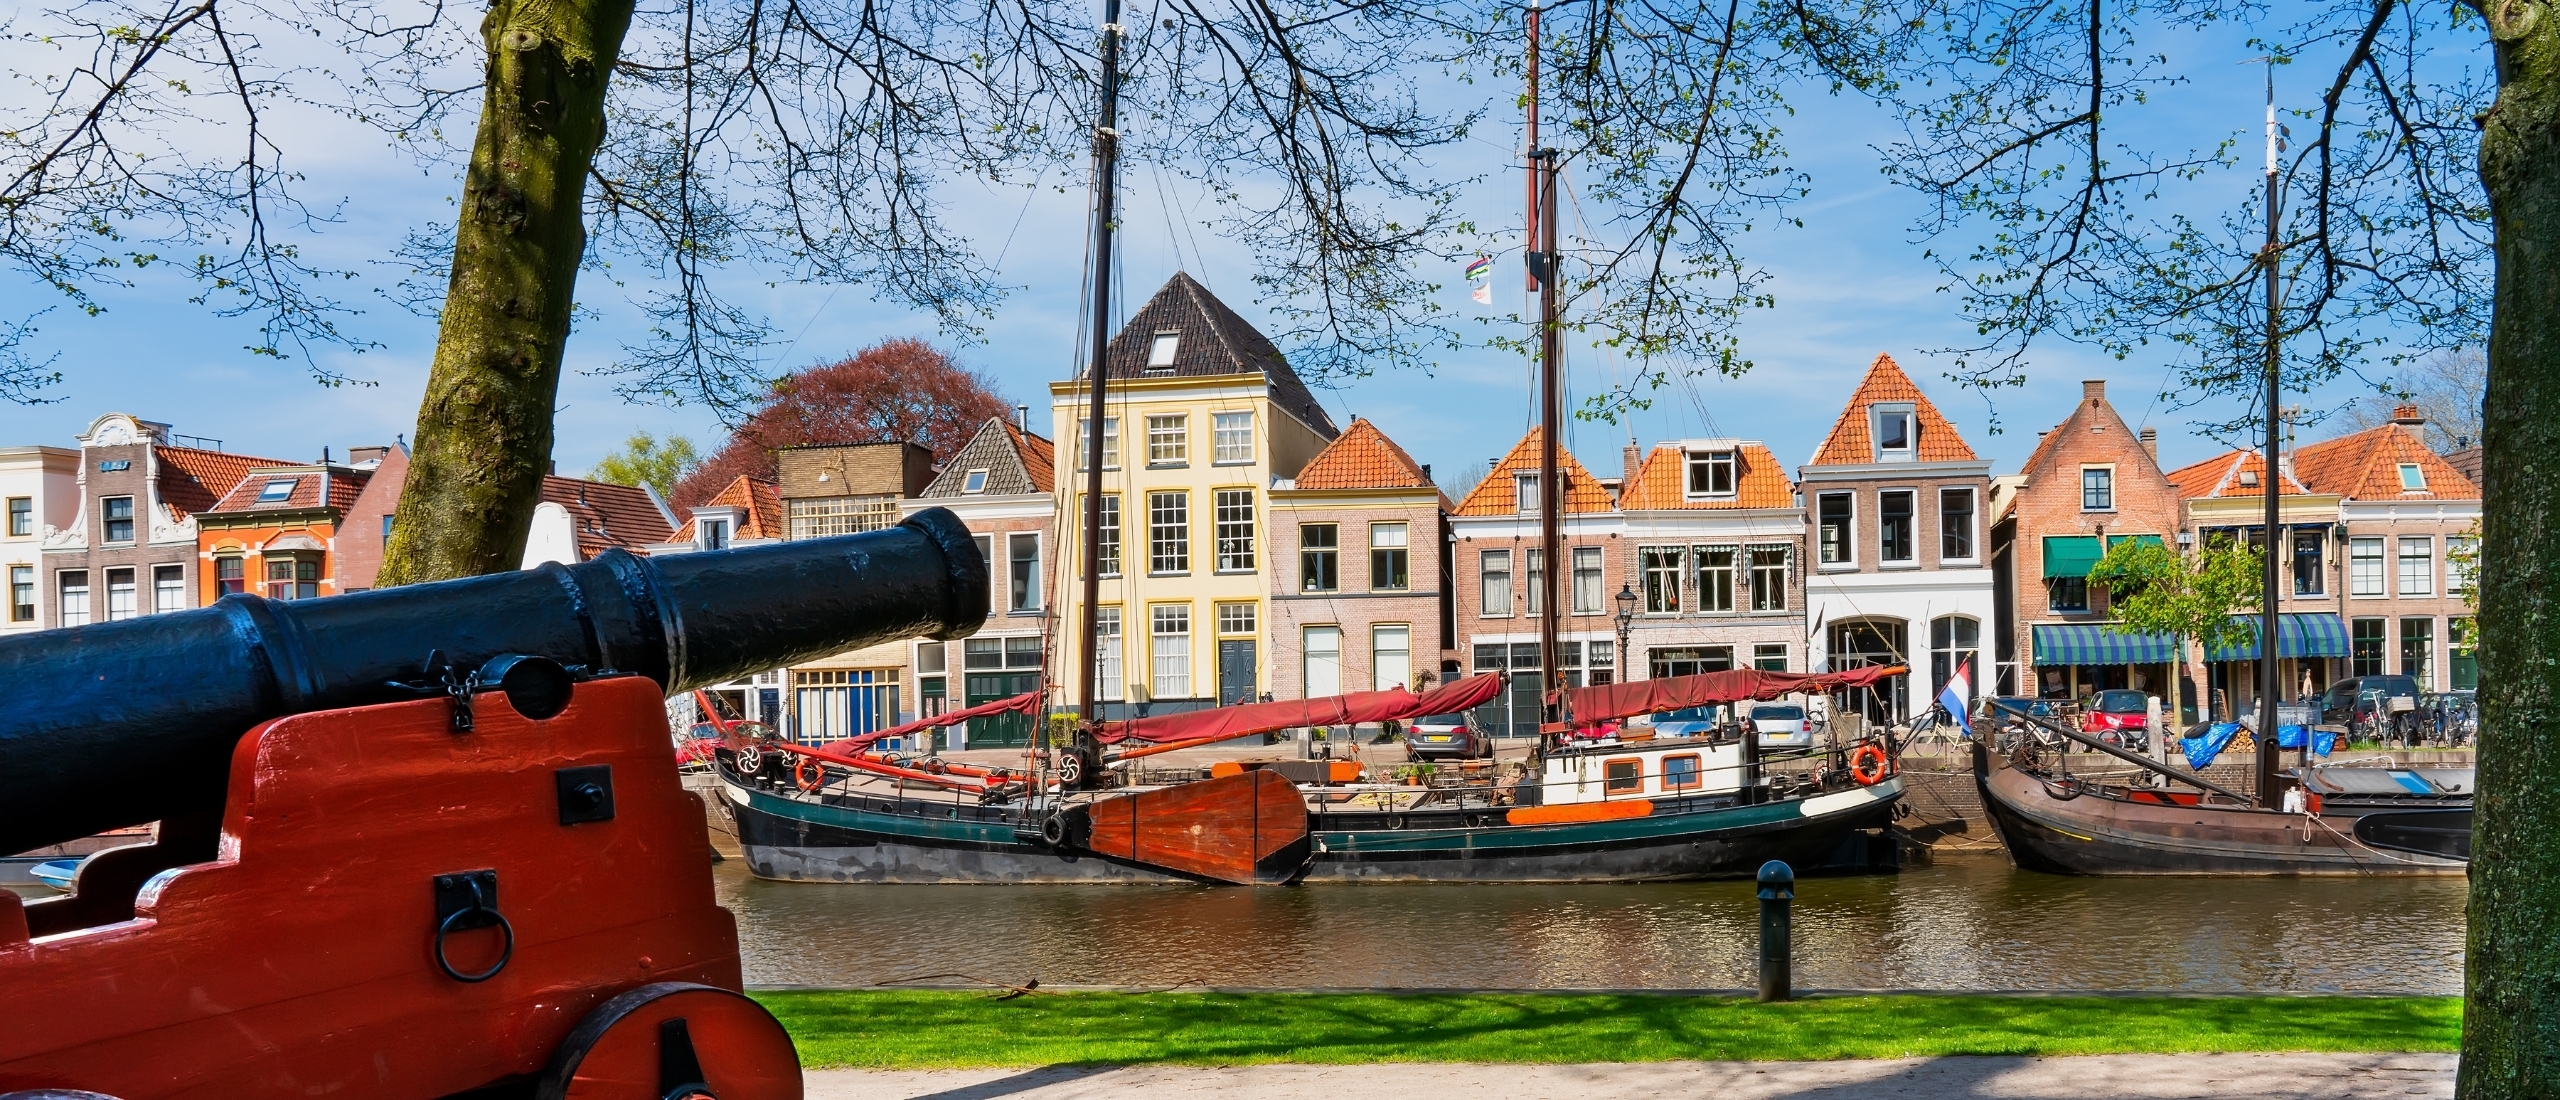 Beleef een heerlijke dagje uit en bijzondere overnachting in Hanzestad Zwolle!